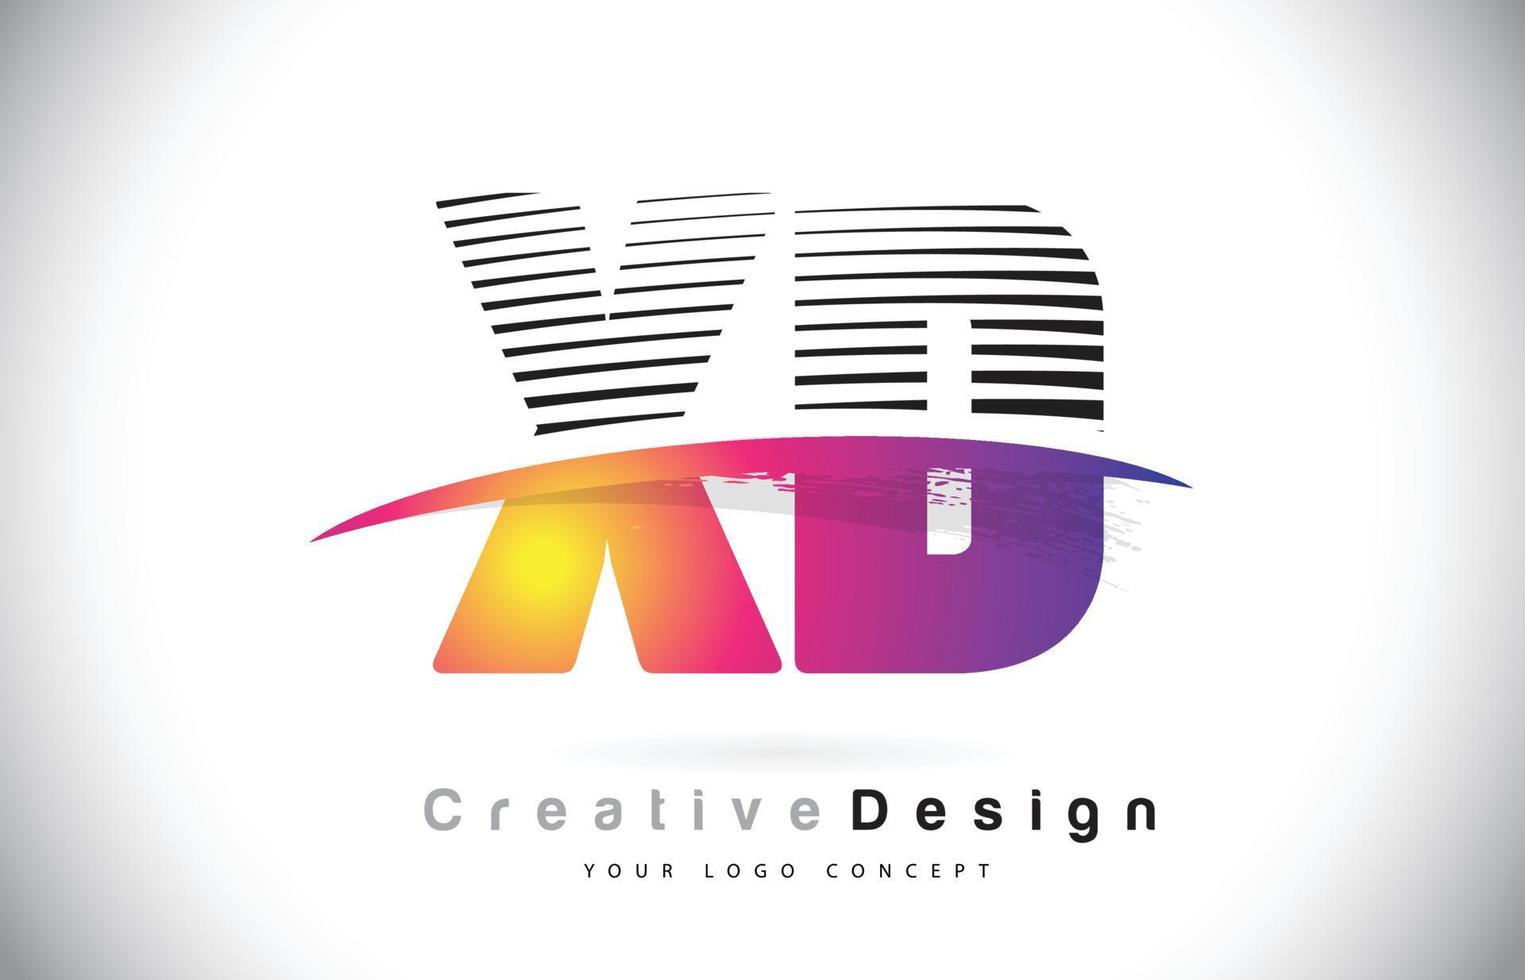 xd xd logo lettera design con linee creative e swosh nel colore del pennello viola. vettore